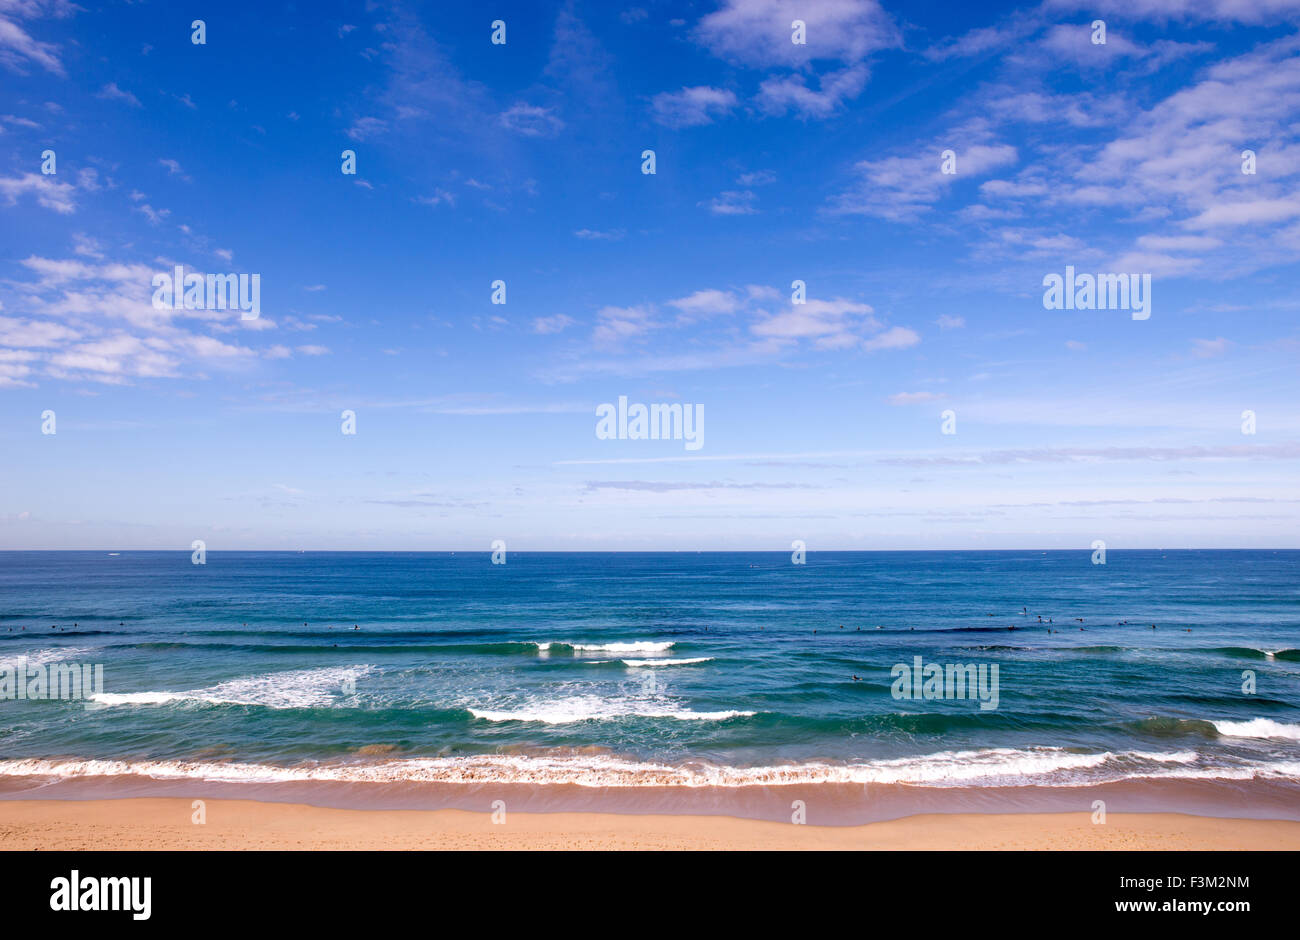 Plage de Cronulla à Sydney, en Australie, avec des nageurs, les nuages et les vagues de l'océan bleu Banque D'Images